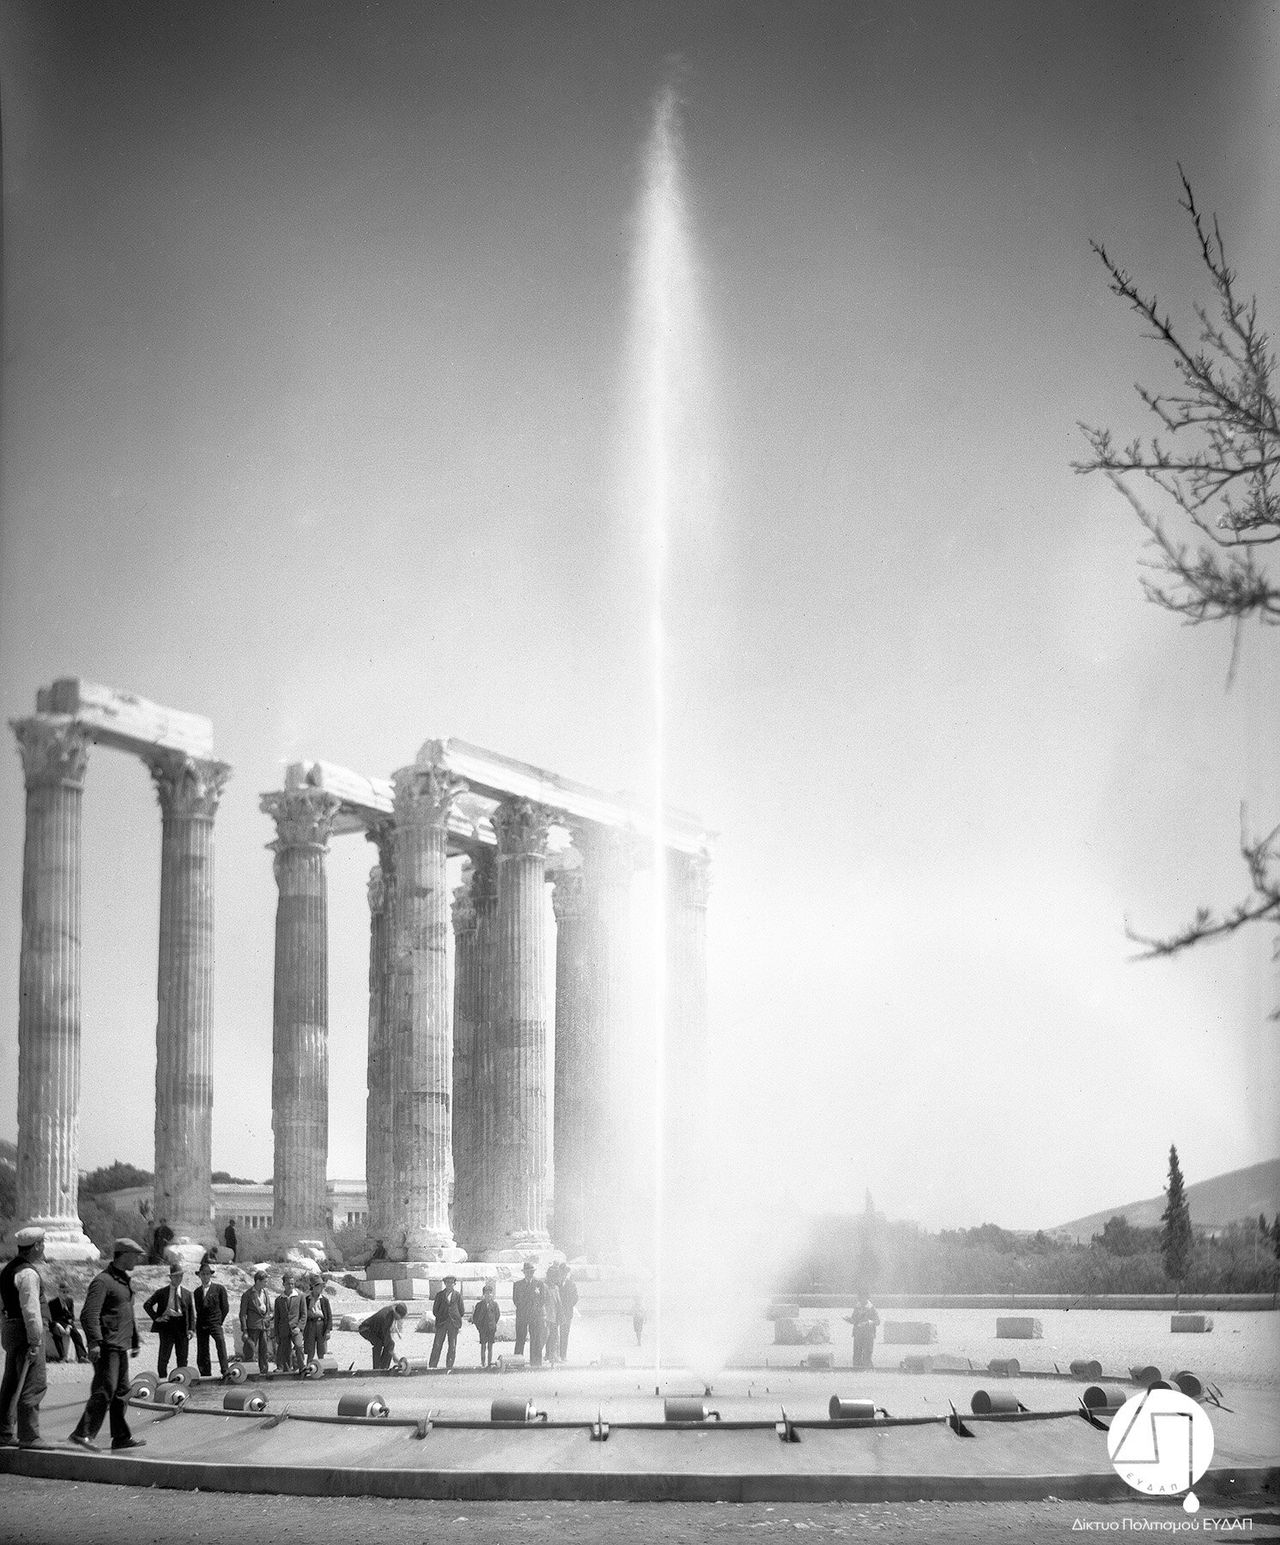 Στιγμιότυπο από την τελετή εγκαινίων του νέου δικτύου ύδρευσης των πόλεων Αθηνών, Πειραιώς και περιχώρων, στους Στύλους του Ολυμπίου Διός, 03 Ιουνίου 1931. Η Ελληνική Εταιρεία Υδάτων διαφημίζεται μέσω της τοποθέτησης πιδάκων νερού στην τελετή των εγκαινίων.